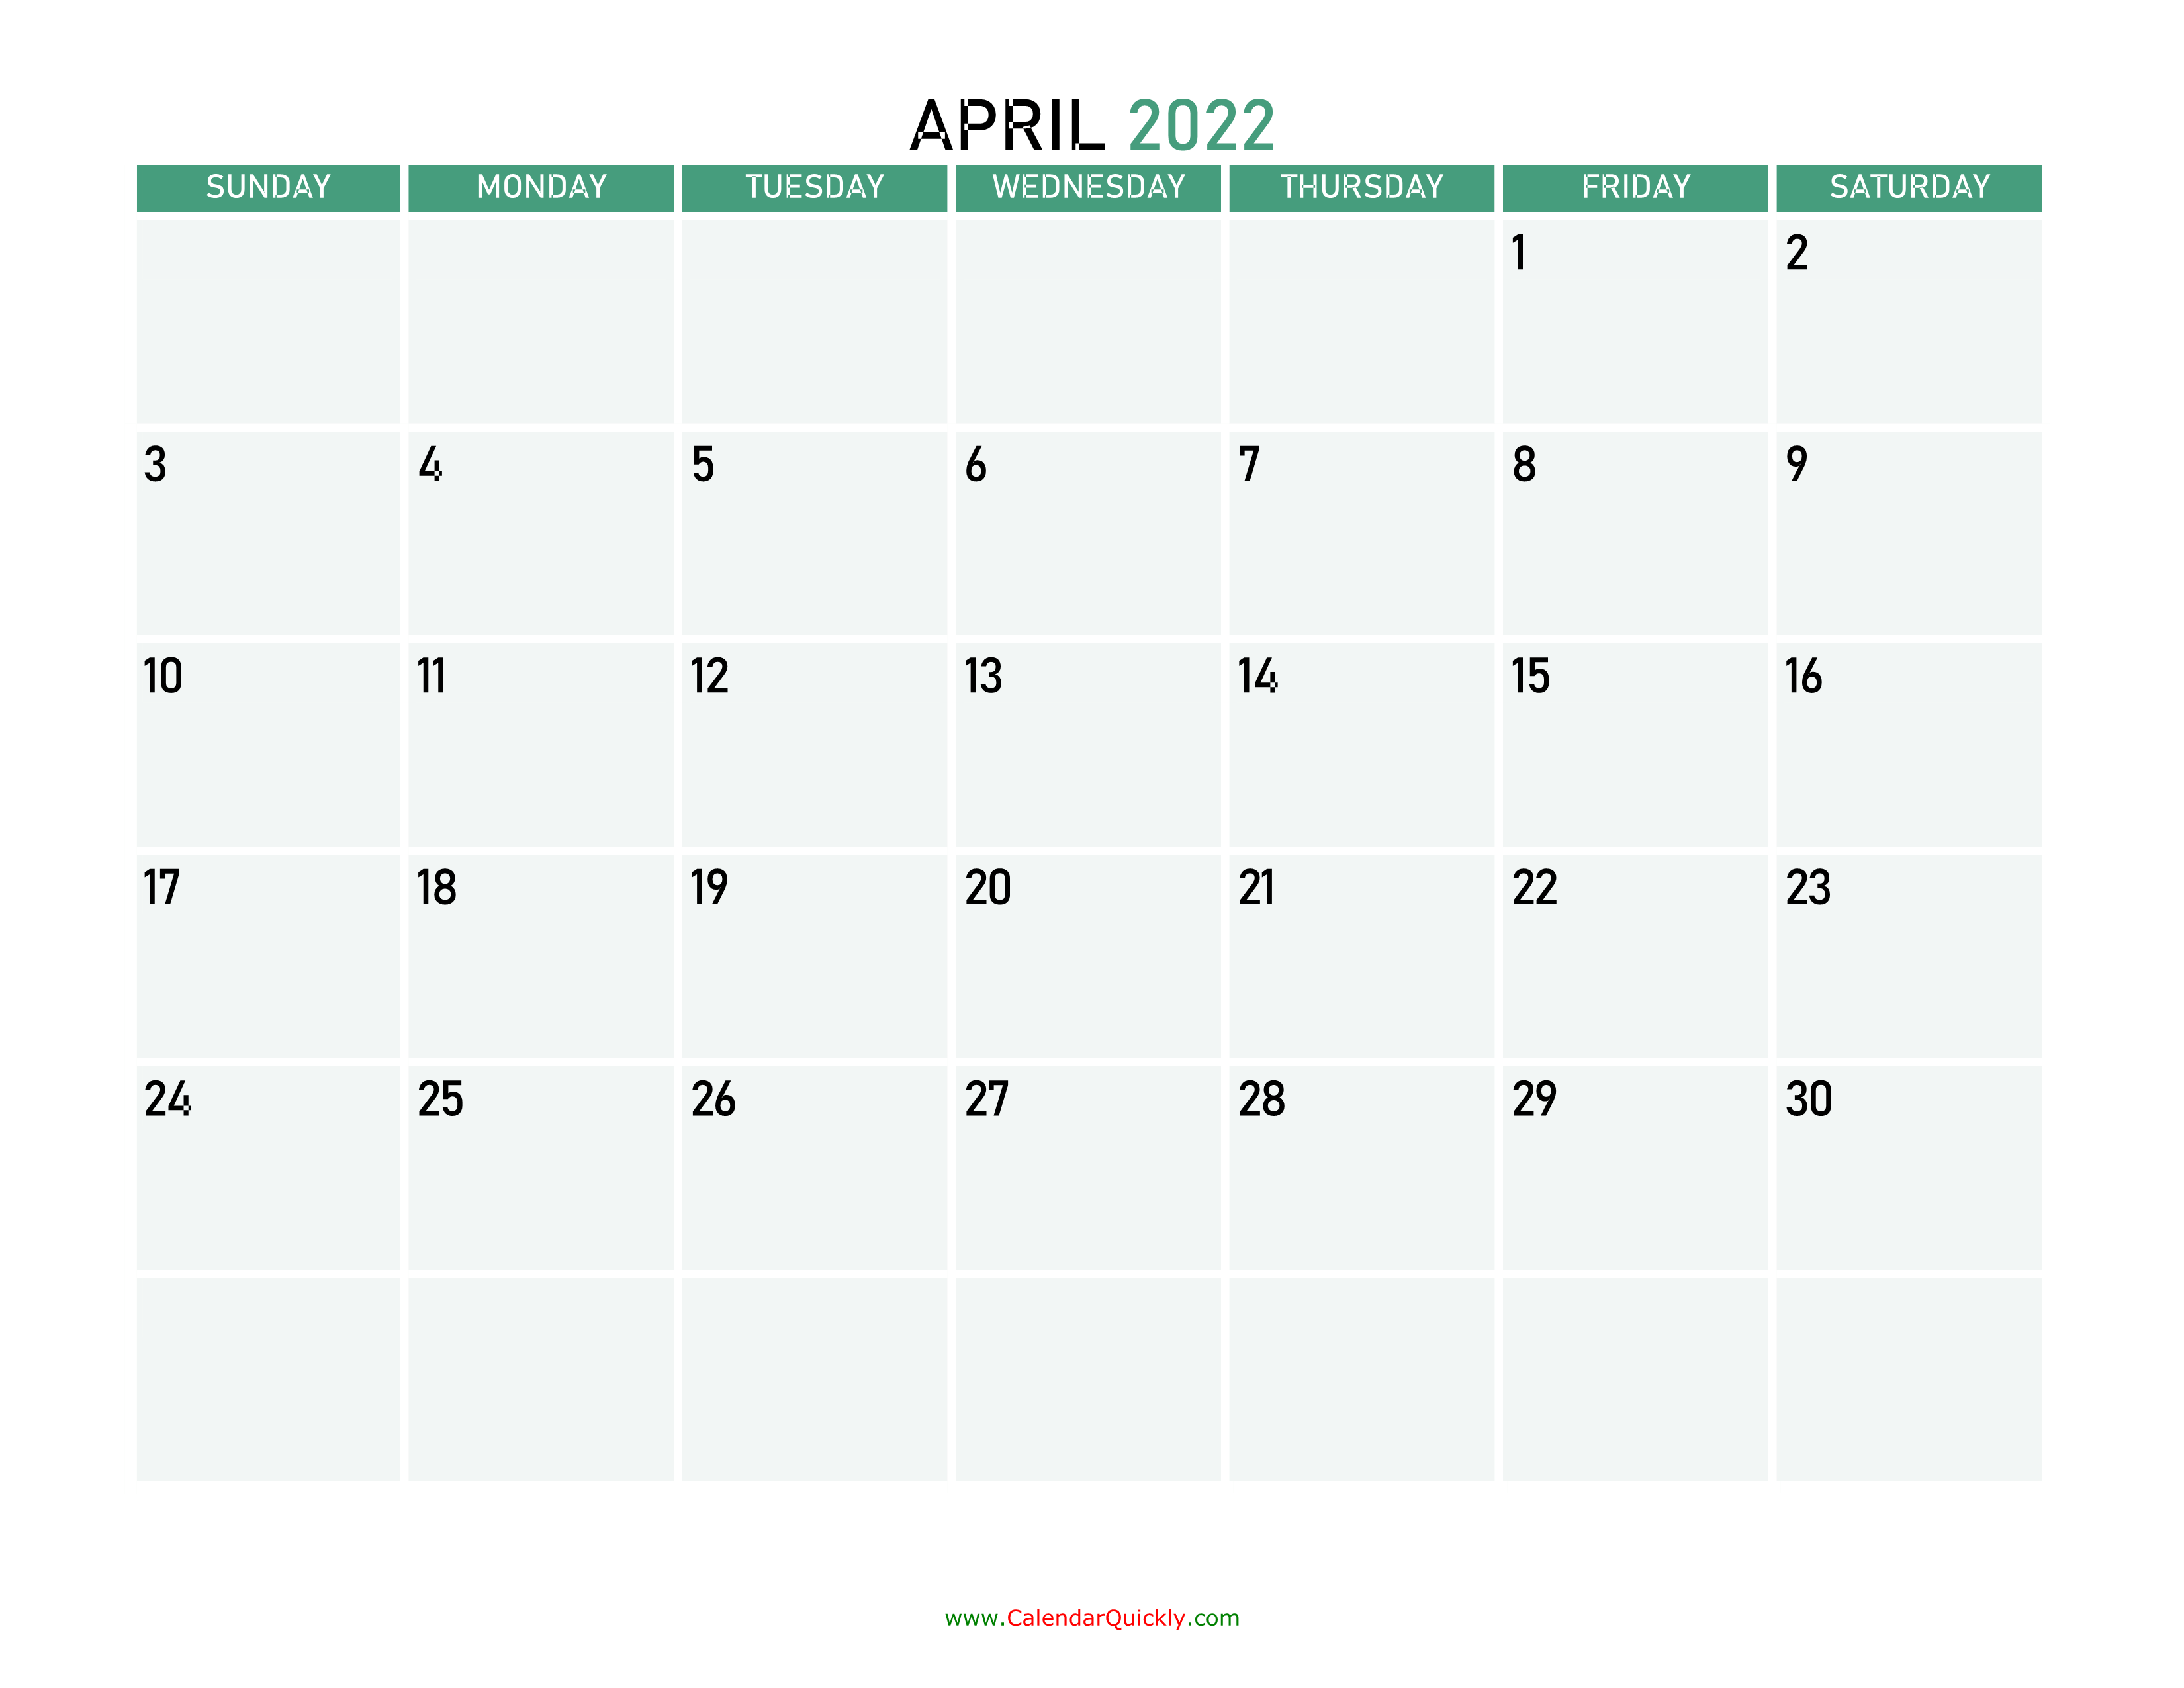 april 2022 calendars calendar quickly